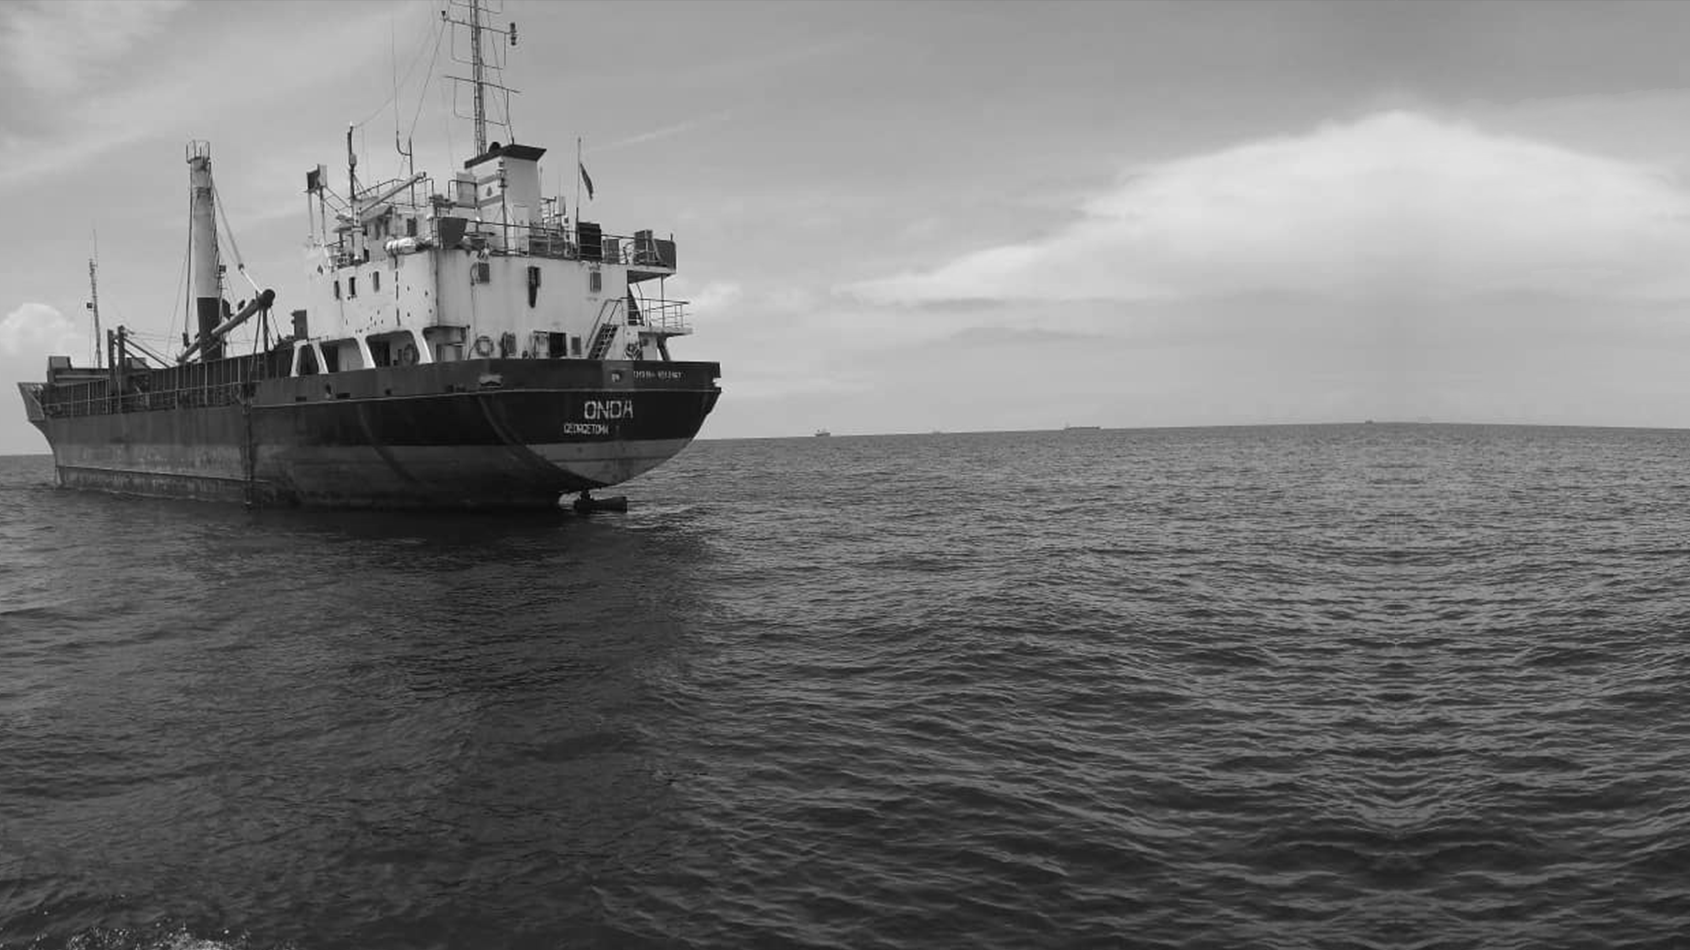 Des marins saisissent un navire pour cause de salaires impayés et de négligence du propriétaire, alors que le Sénégal se dérobe à ses obligations envers l’équipage